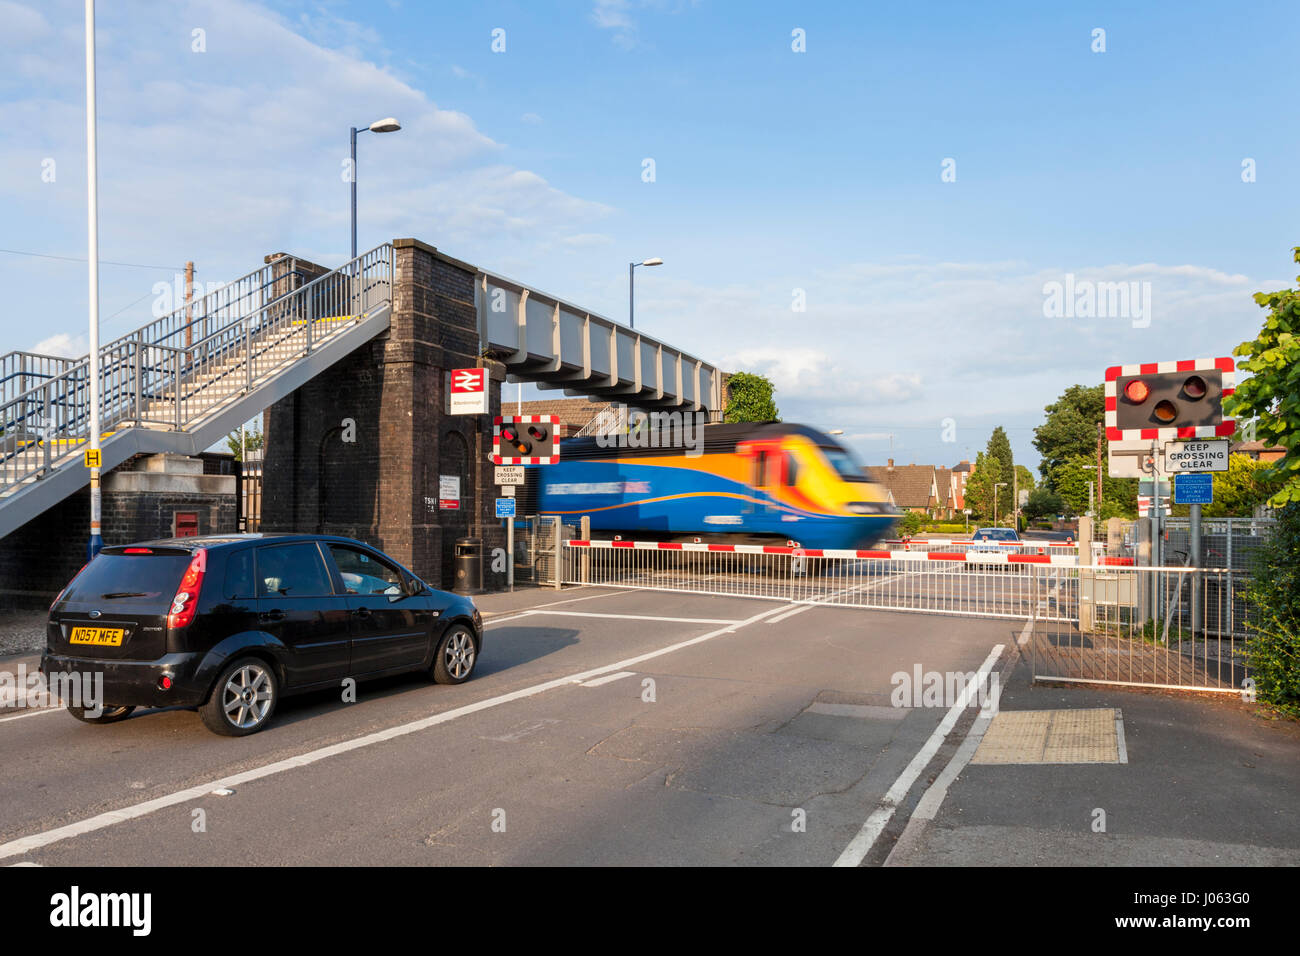 Automobili in attesa presso un passaggio a livello con barriere abbassate come un treno che passa. Attenborough stazione ferroviaria, Nottinghamshire, England, Regno Unito Foto Stock